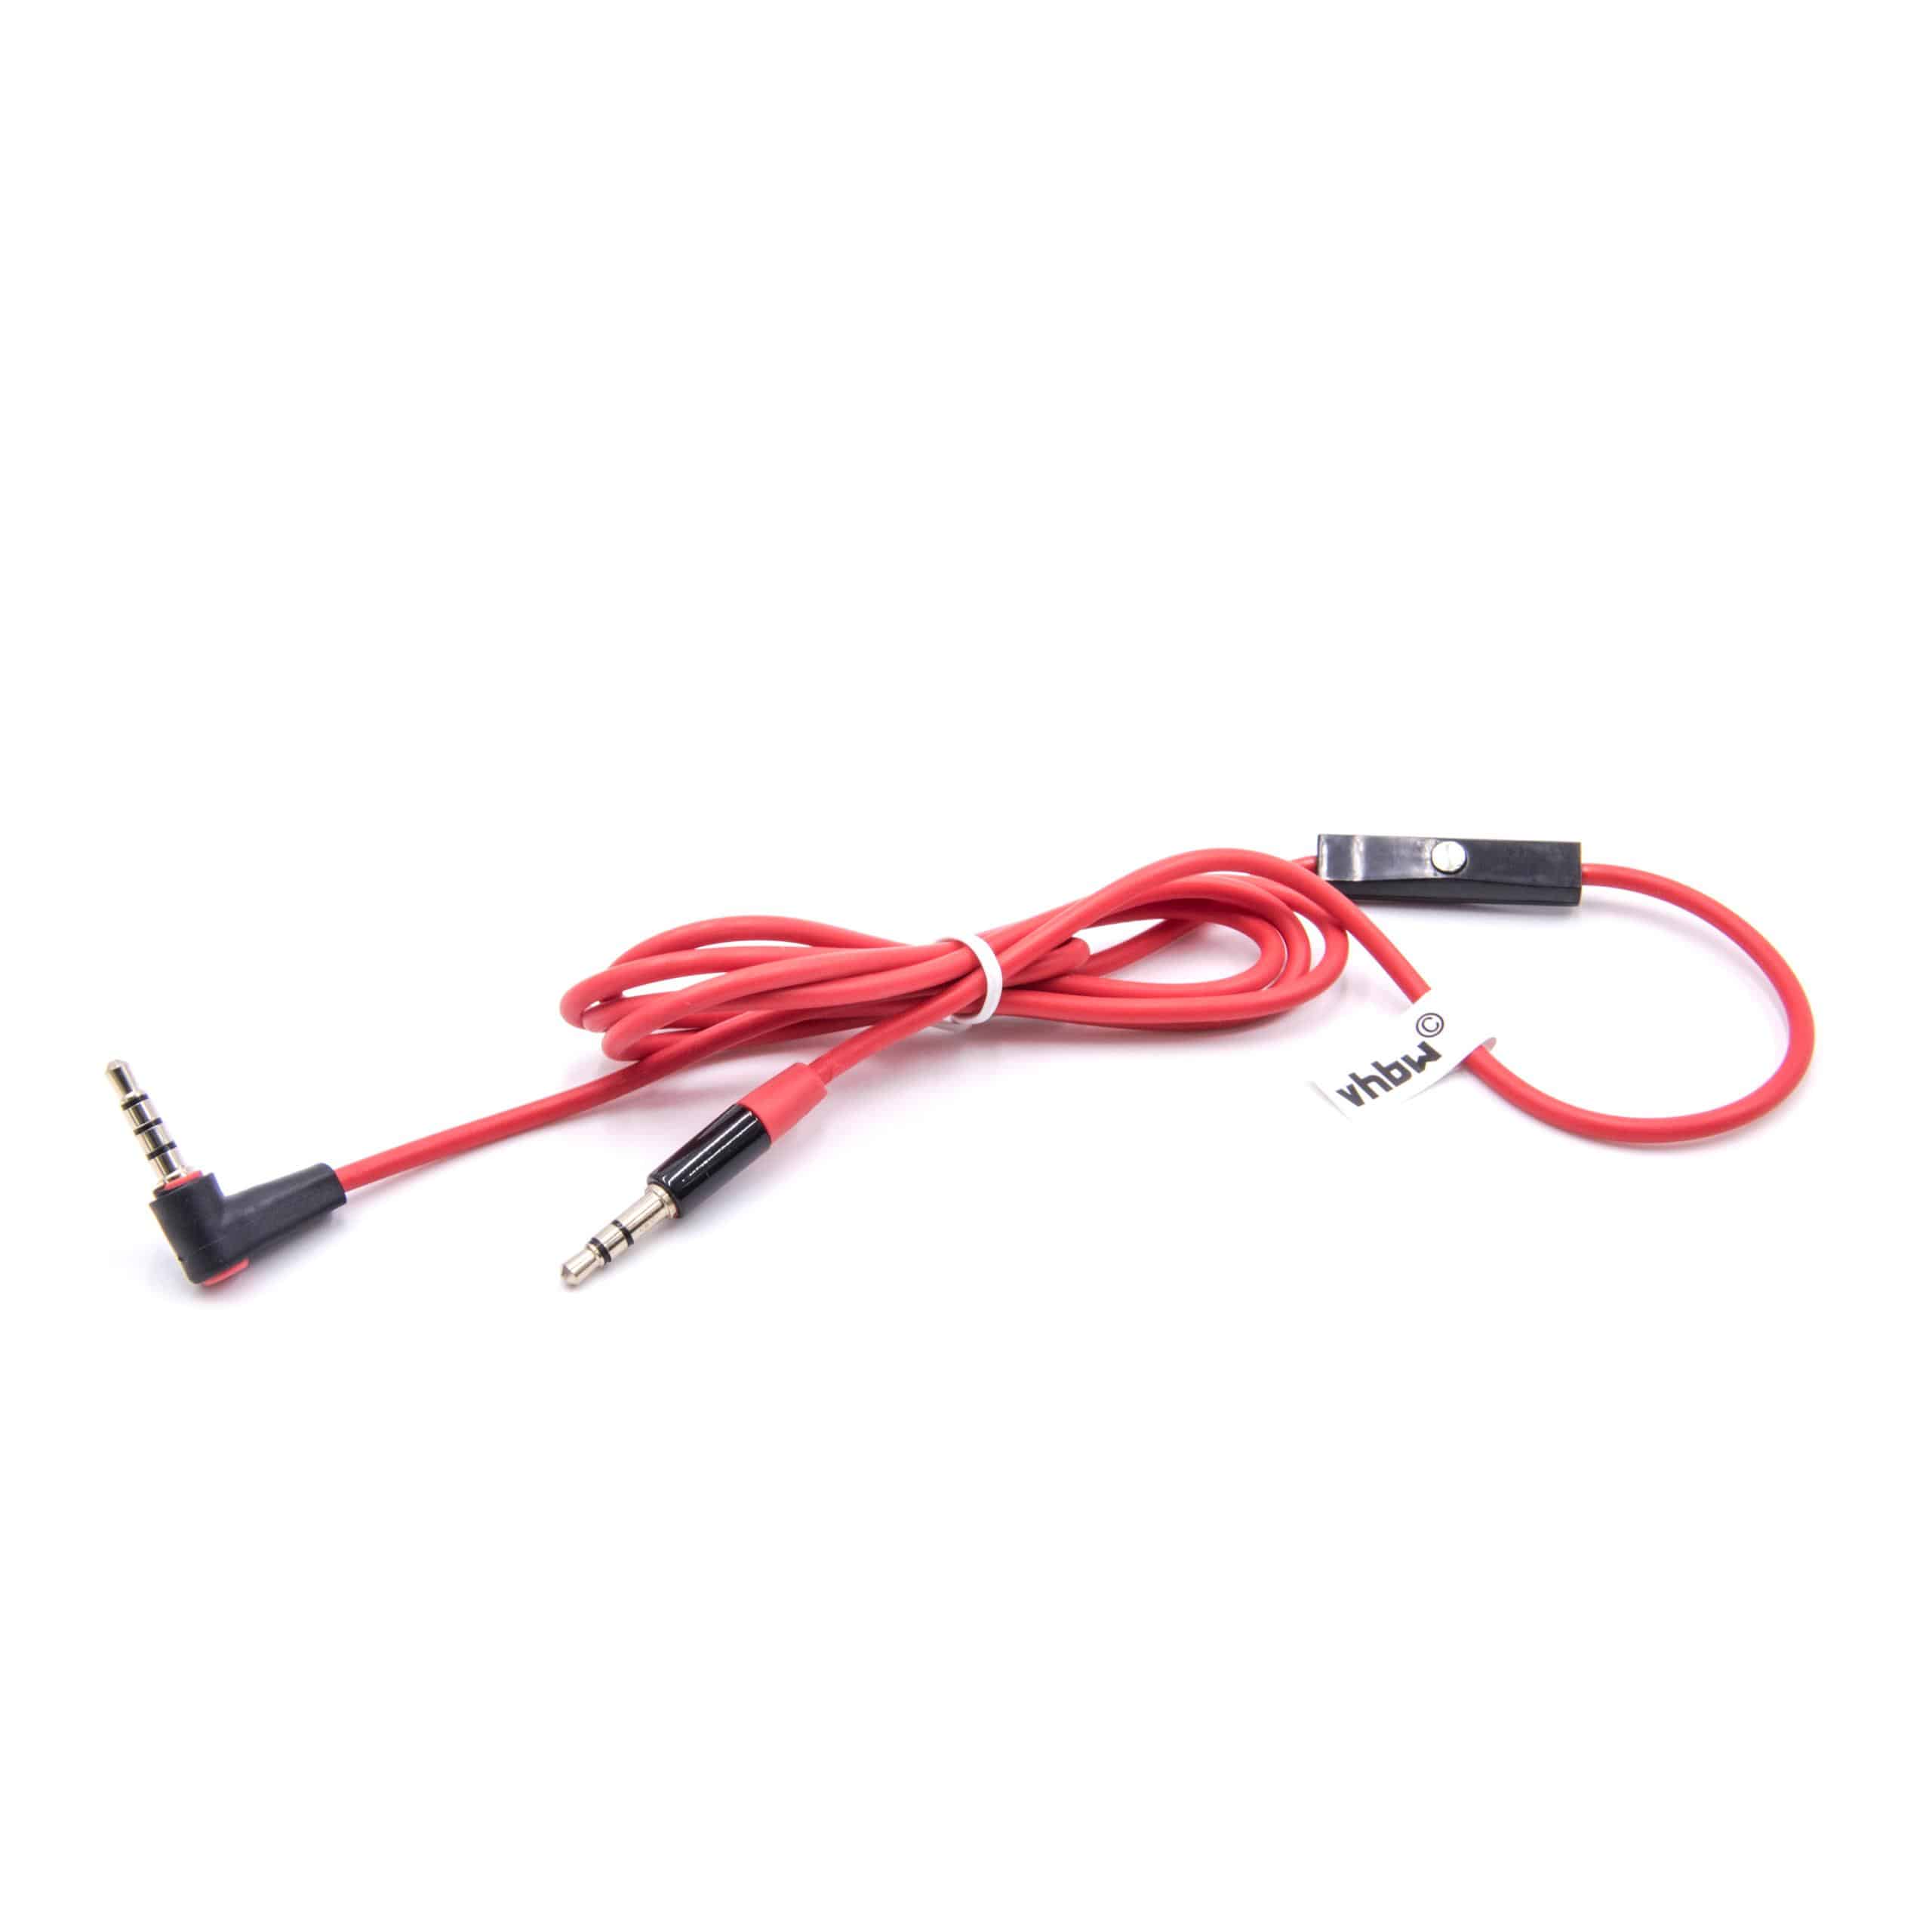 Cable audio AUX a conector jack de 3,5 mm para auriculares como, 120 cm - micrófono